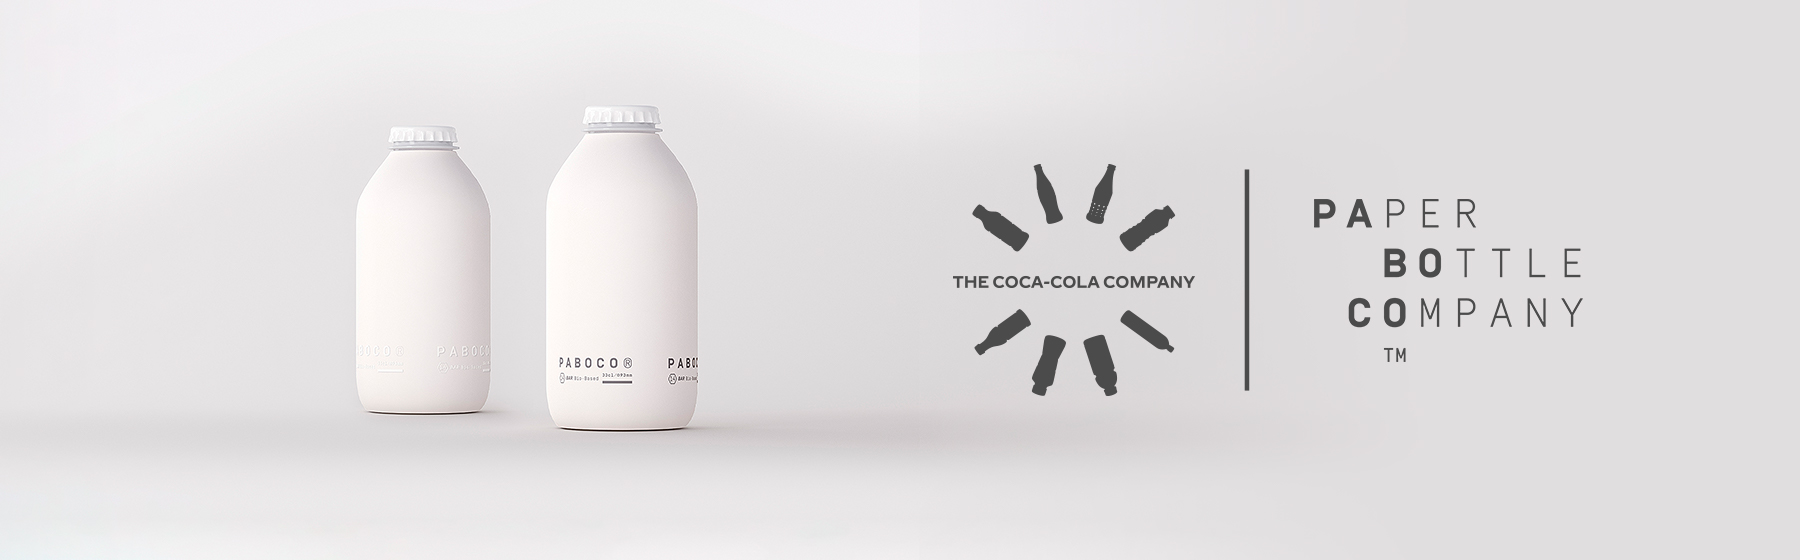 Coca-Cola presenta su primer prototipo de botella de papel